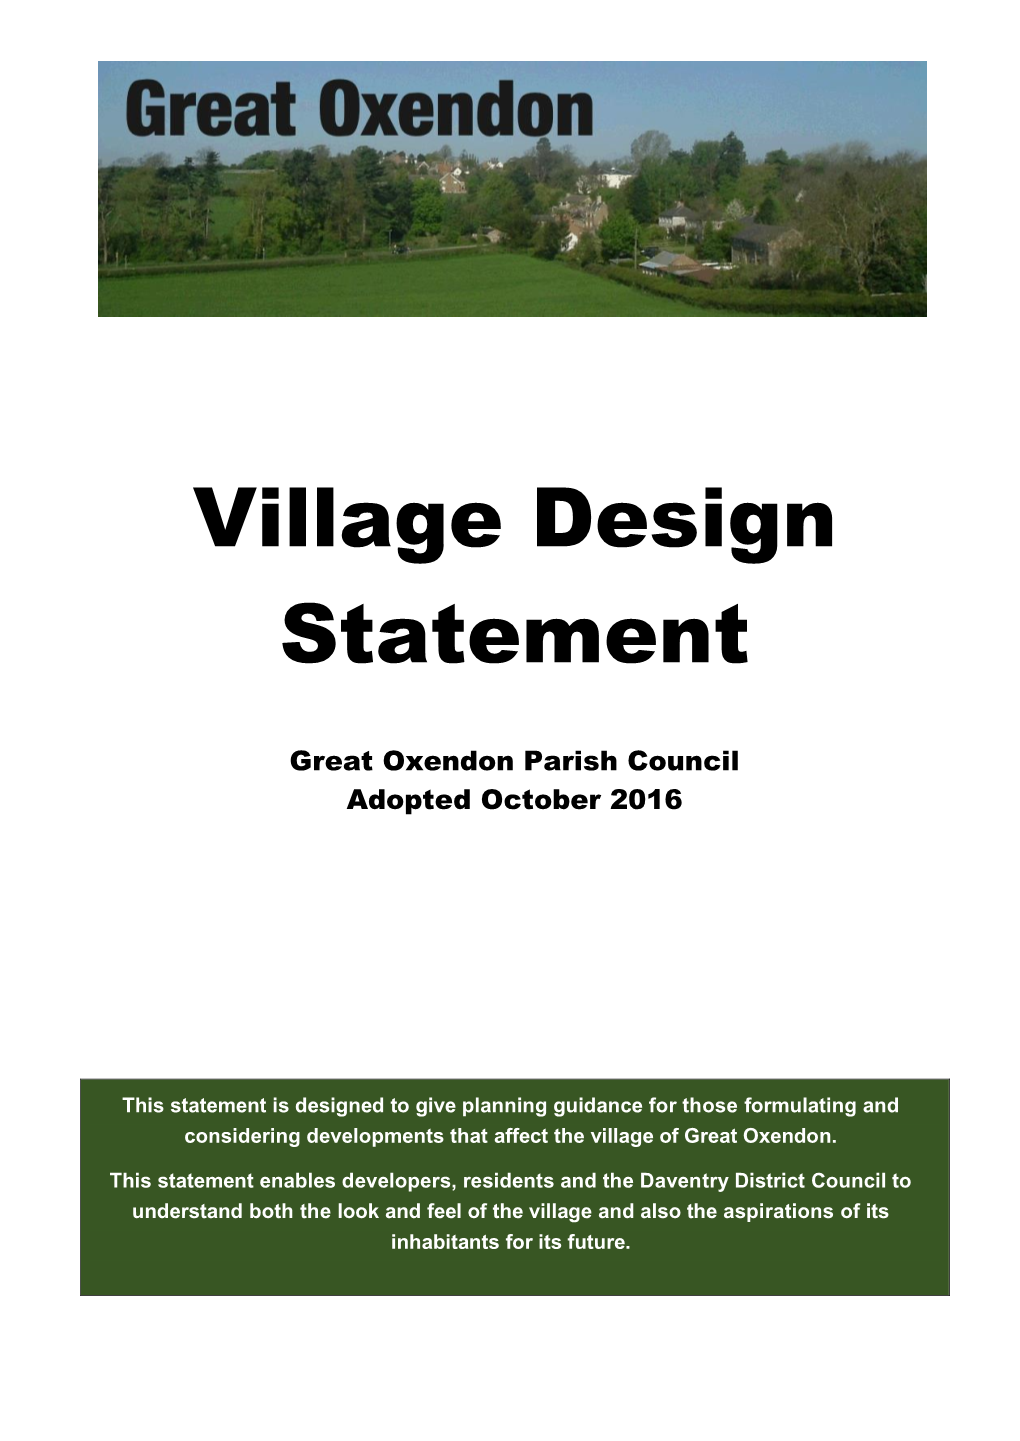 Great Oxendon Village Design Statement